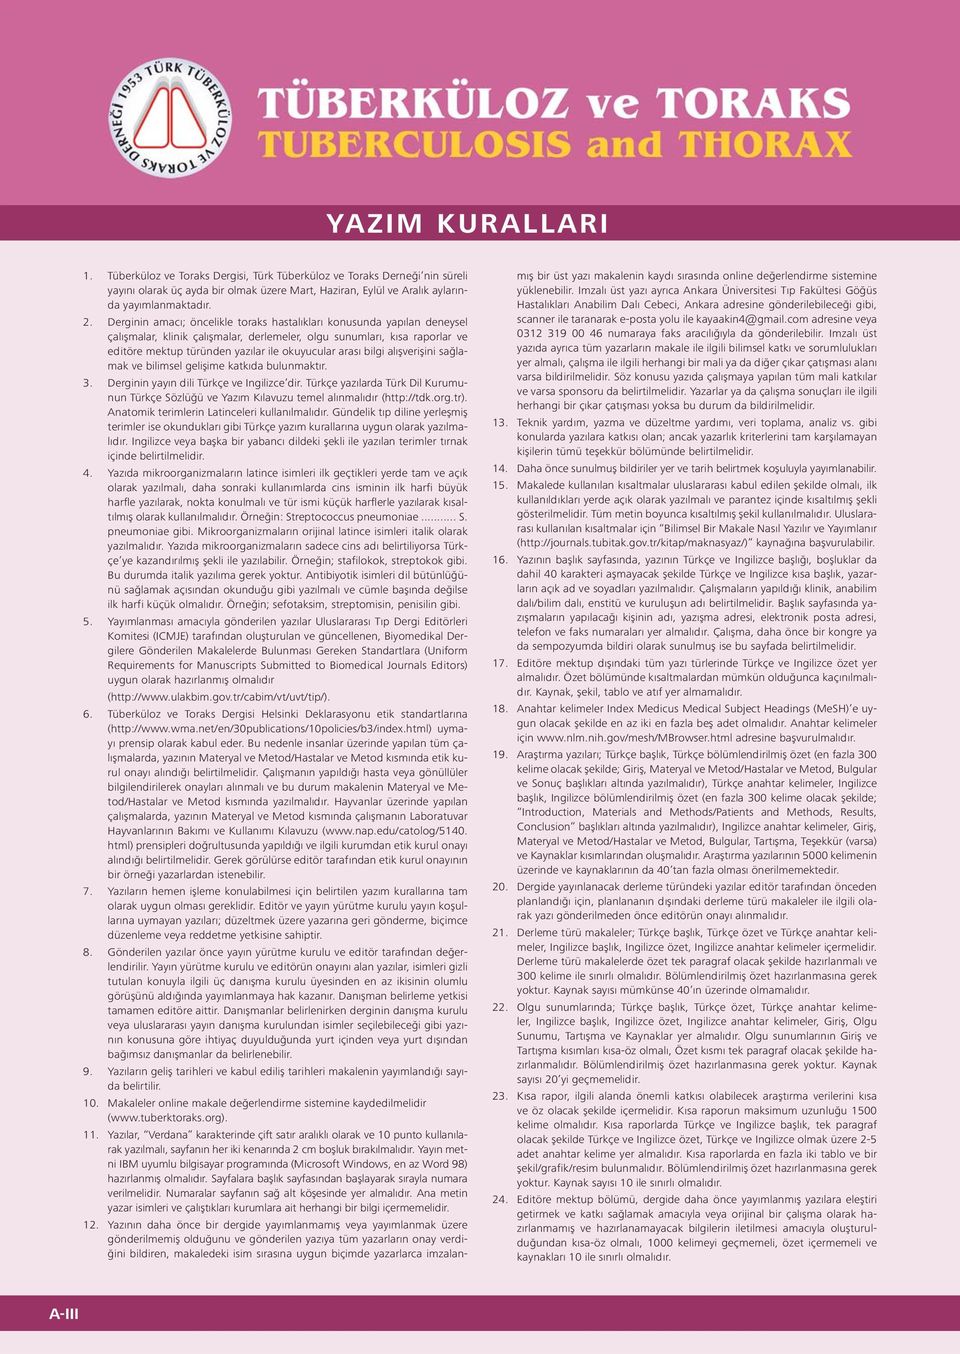 arası bilgi alışverişini sağlamak ve bilimsel gelişime katkıda bulunmaktır. 3. Derginin yayın dili Türkçe ve Ingilizce dir.